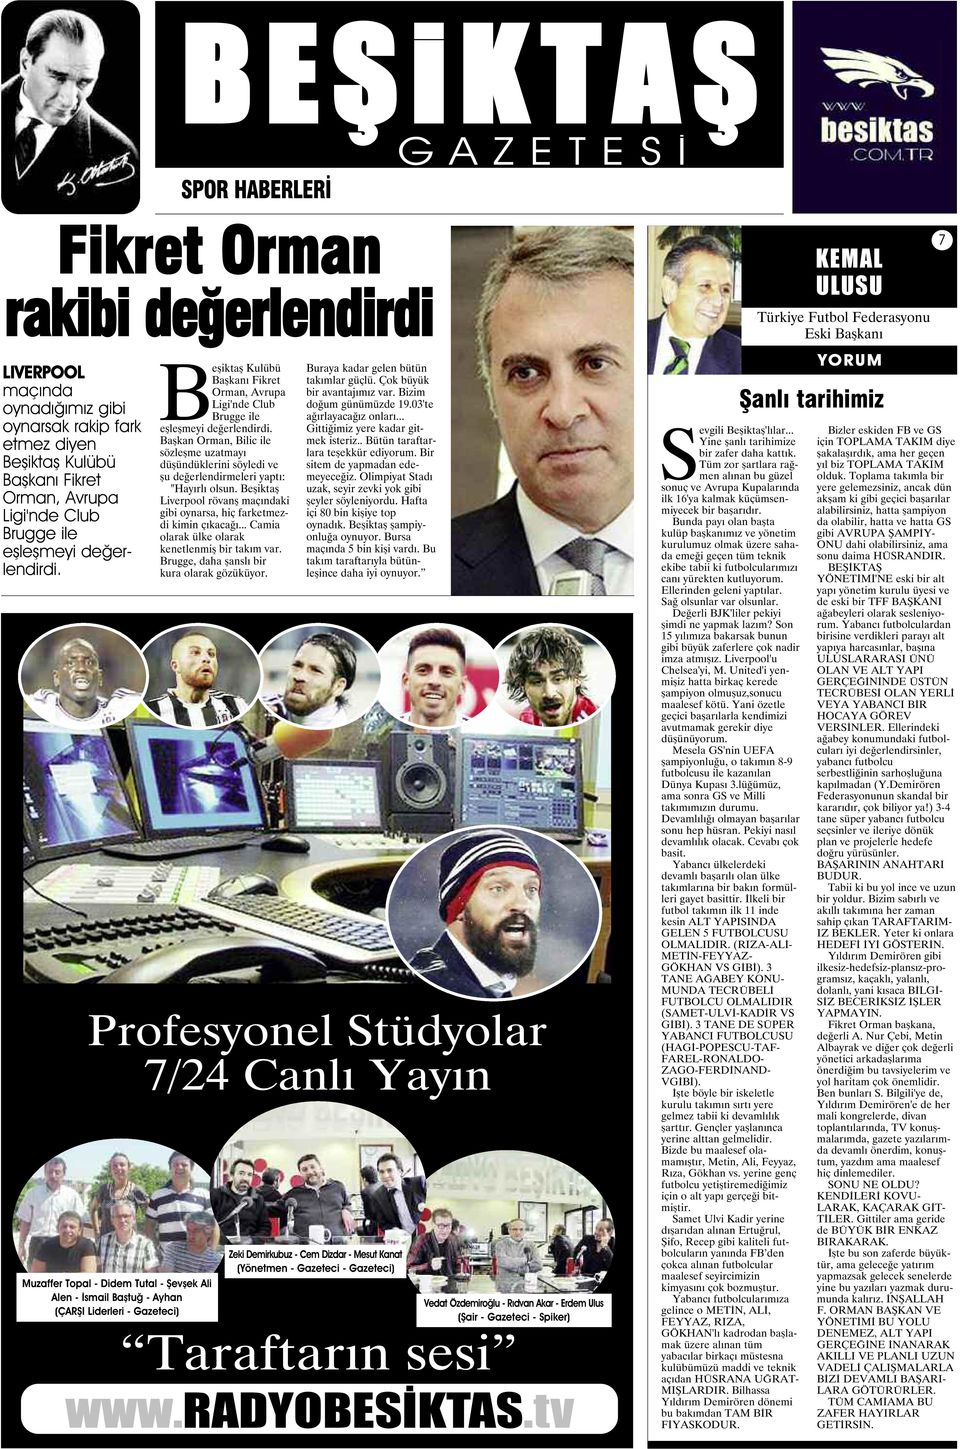 Başkan Orman, Bilic ile sözleşme uzatmayı düşündüklerini söyledi ve şu değerlendirmeleri yaptı: "Hayırlı olsun. Beşiktaş Liverpool rövanş maçındaki gibi oynarsa, hiç farketmezdi kimin çıkacağı.